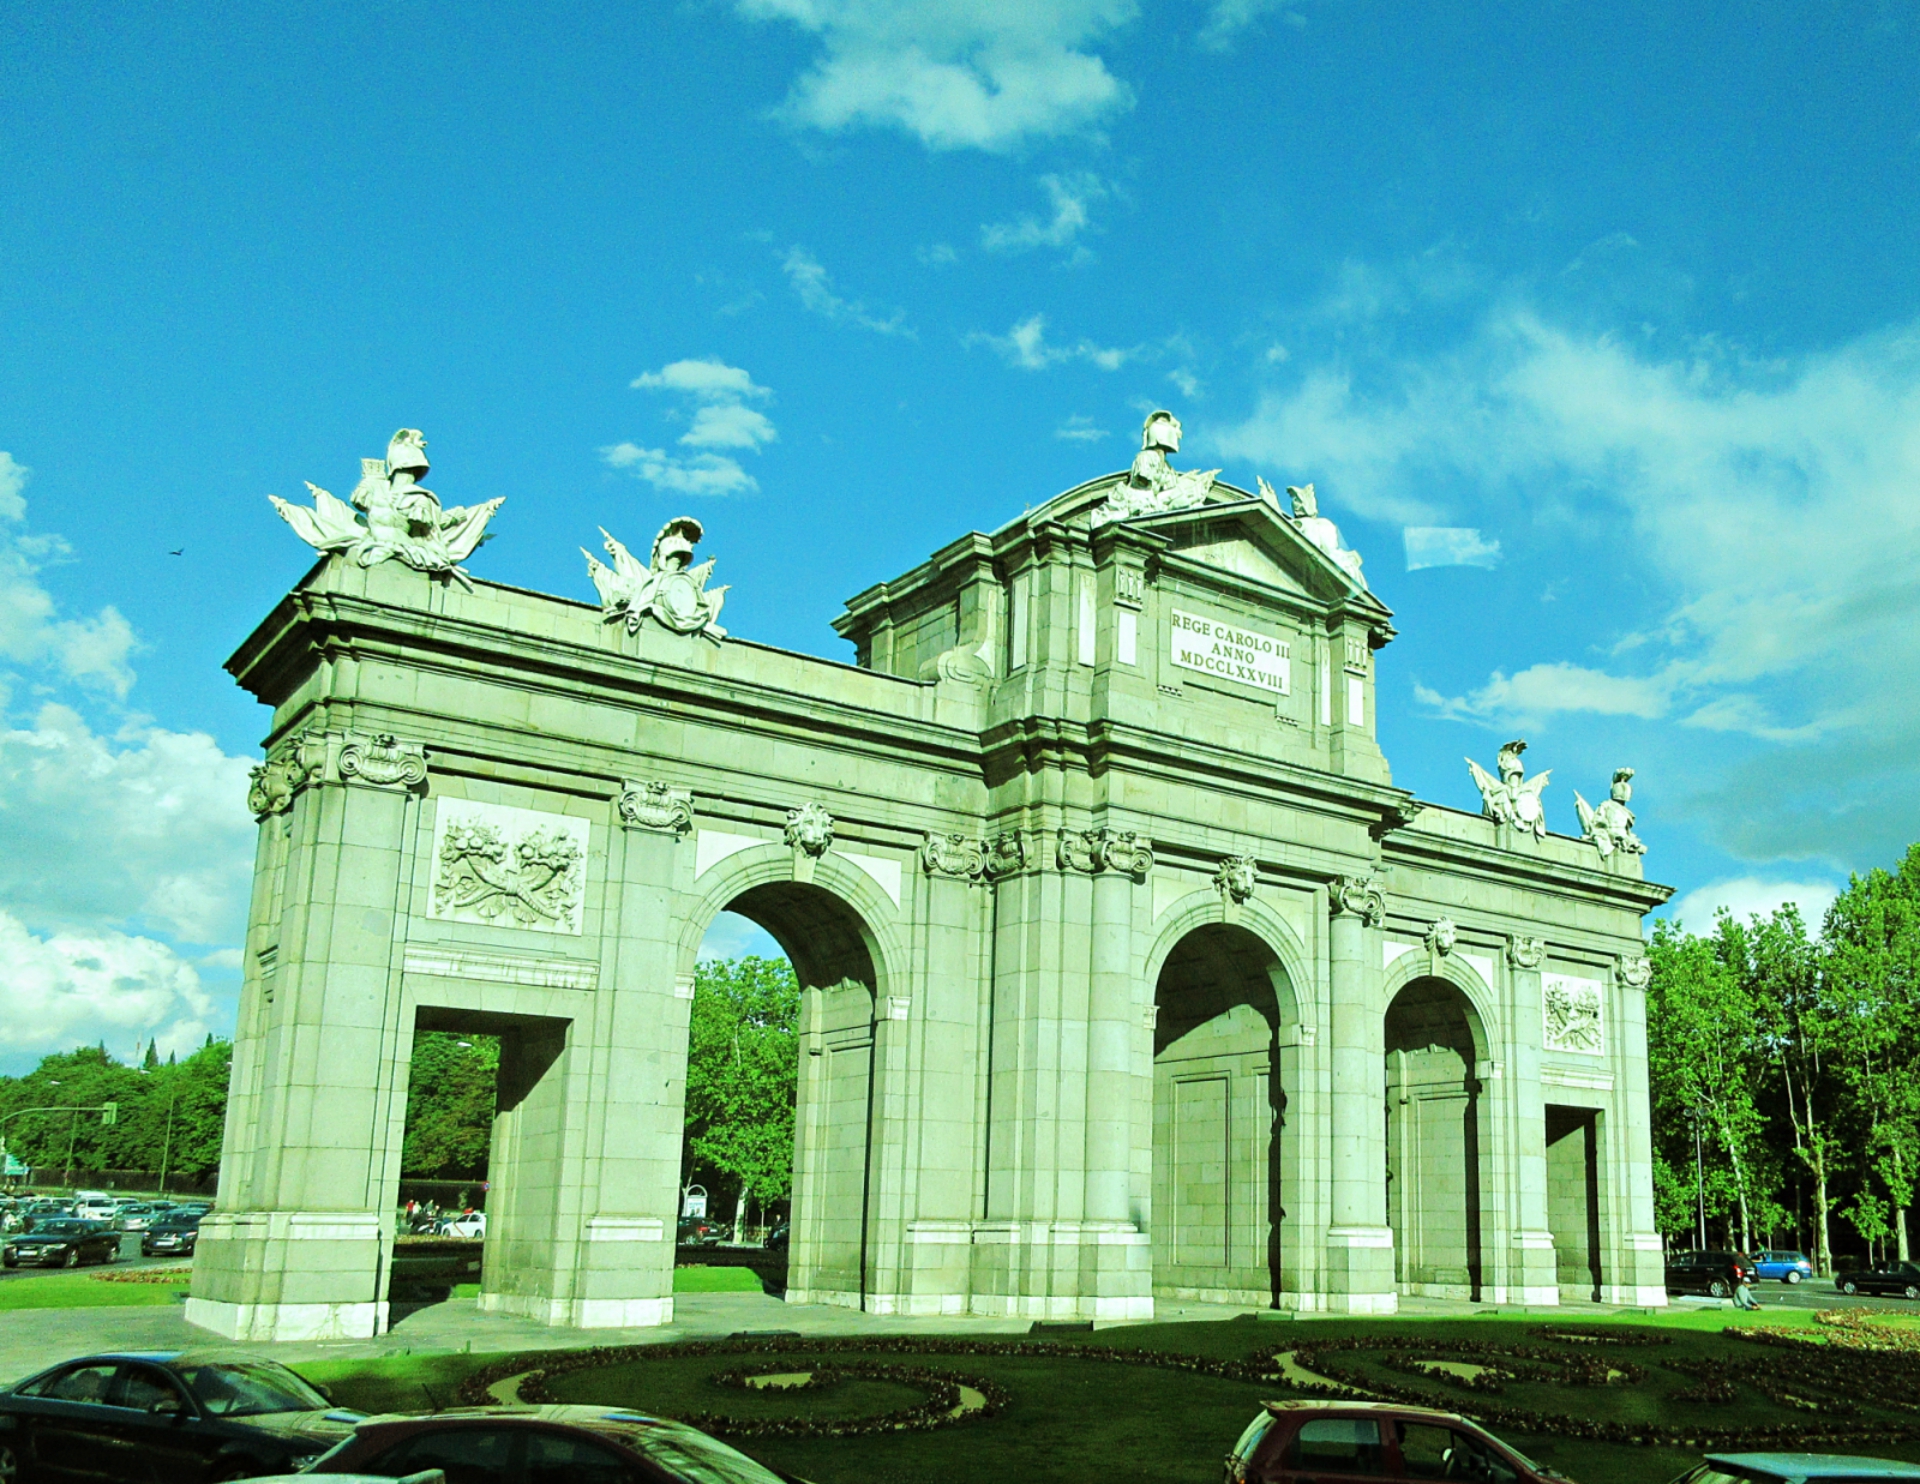 Puerta De Alcala: A Neoclassical Gate in Madrid